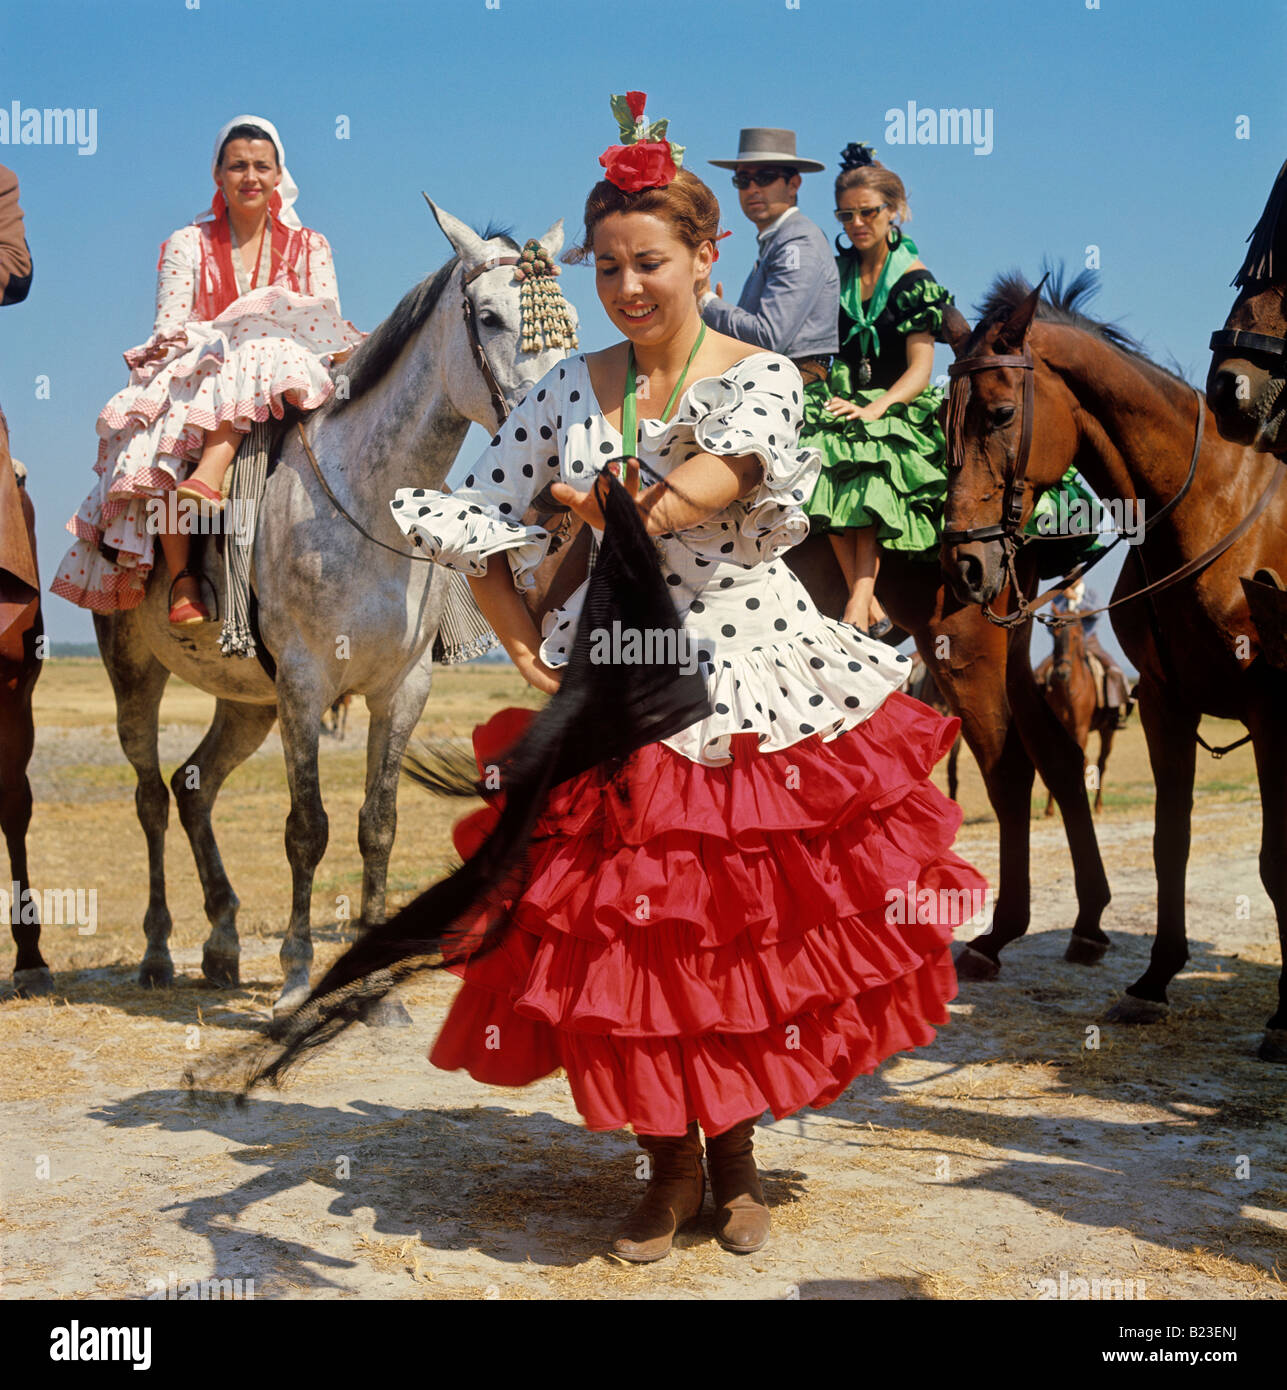 Portrait de danseuse flamenco pèlerinage d'el rocio province de Huelva Espagne Banque D'Images